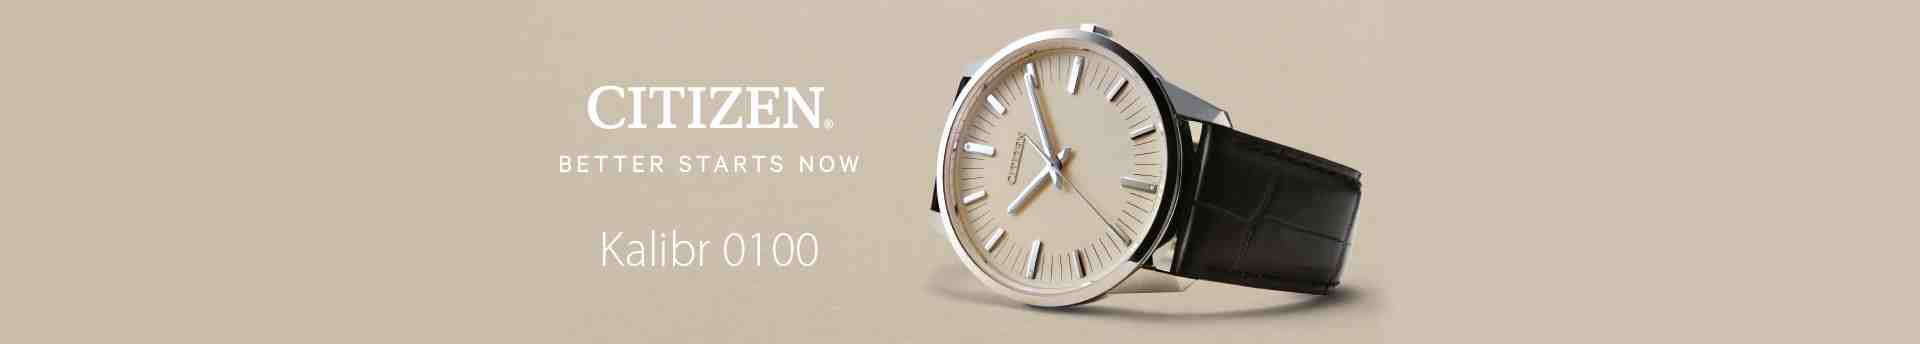 Citizen Eco-Drive: Kalibr Citizen 0100 - nejpřesnější autonomní hodinky na světě